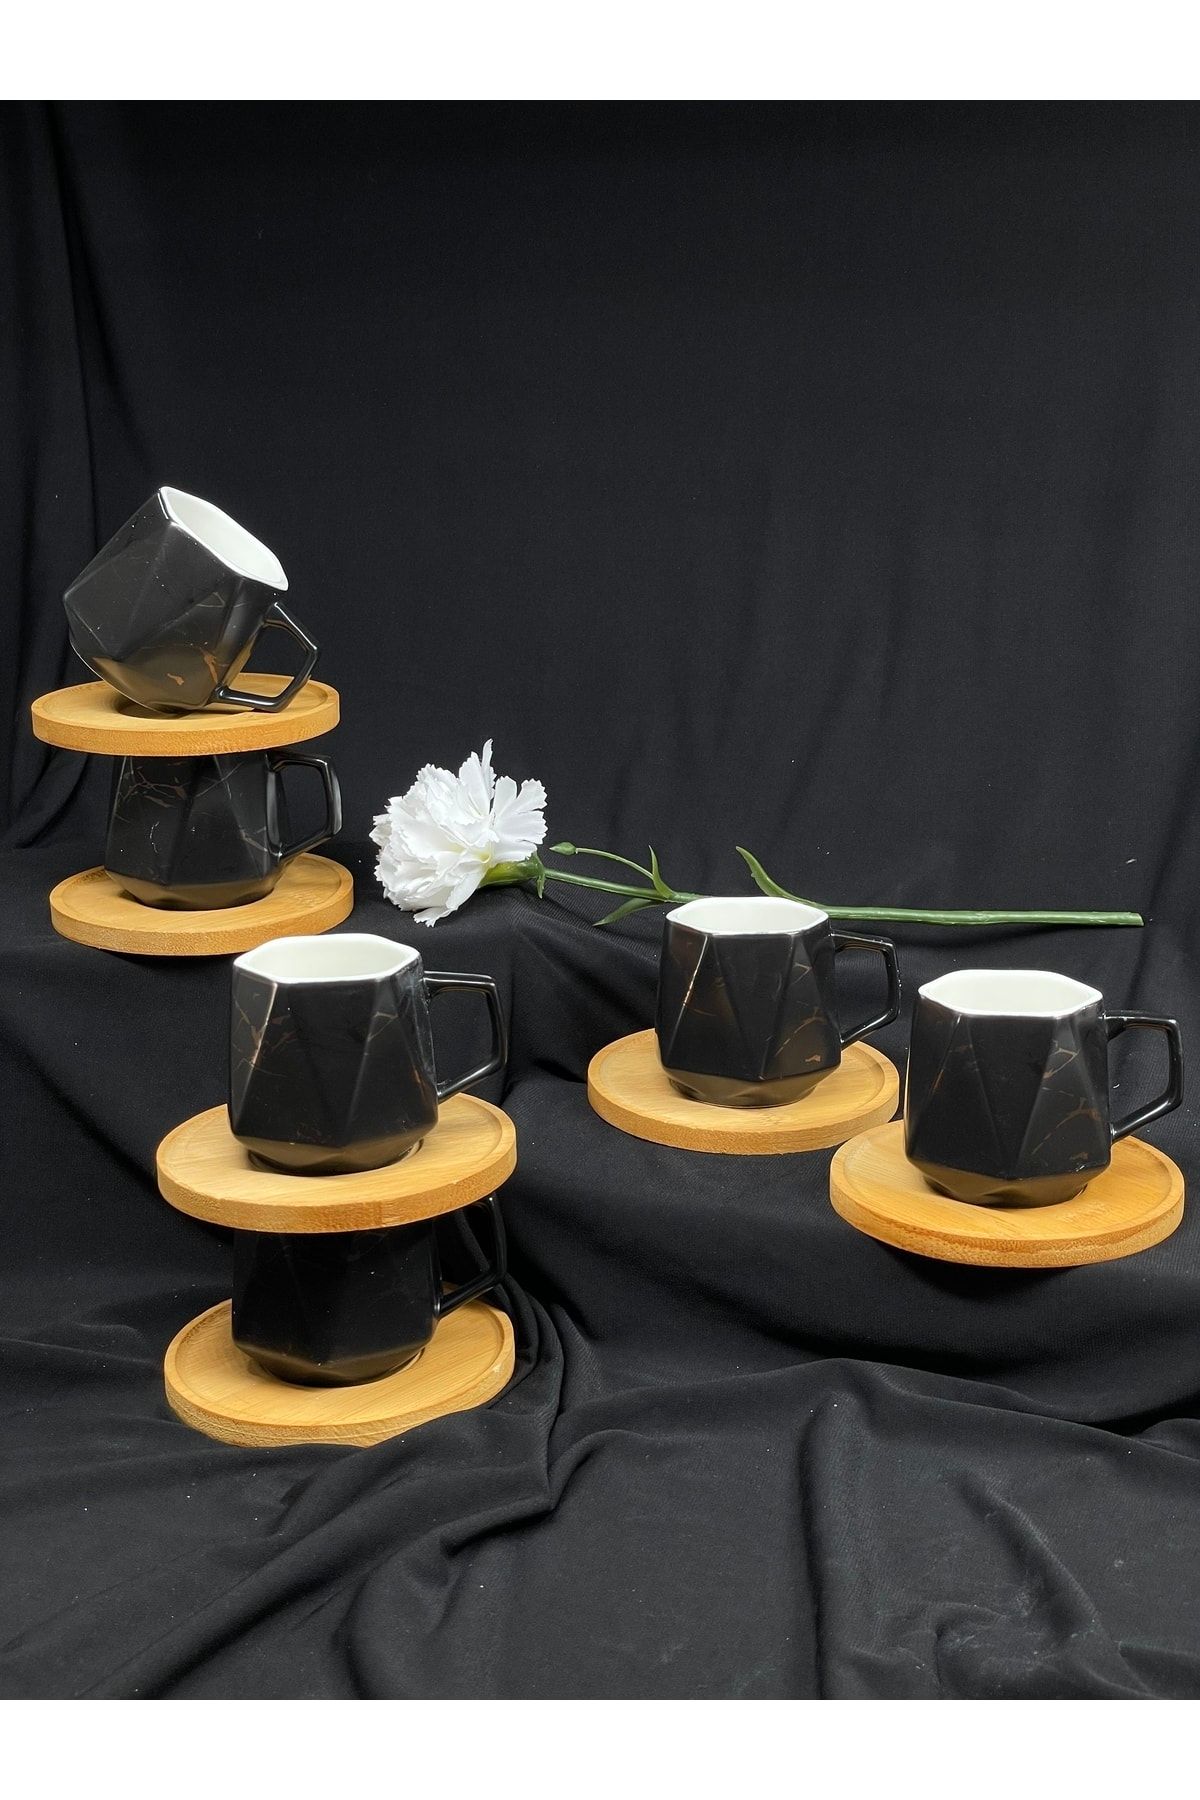 YzHome 6 Kişilik Siyah Mermer Desenli Prizma Porselen Bambu Tabak Kahve Fincan Takımı